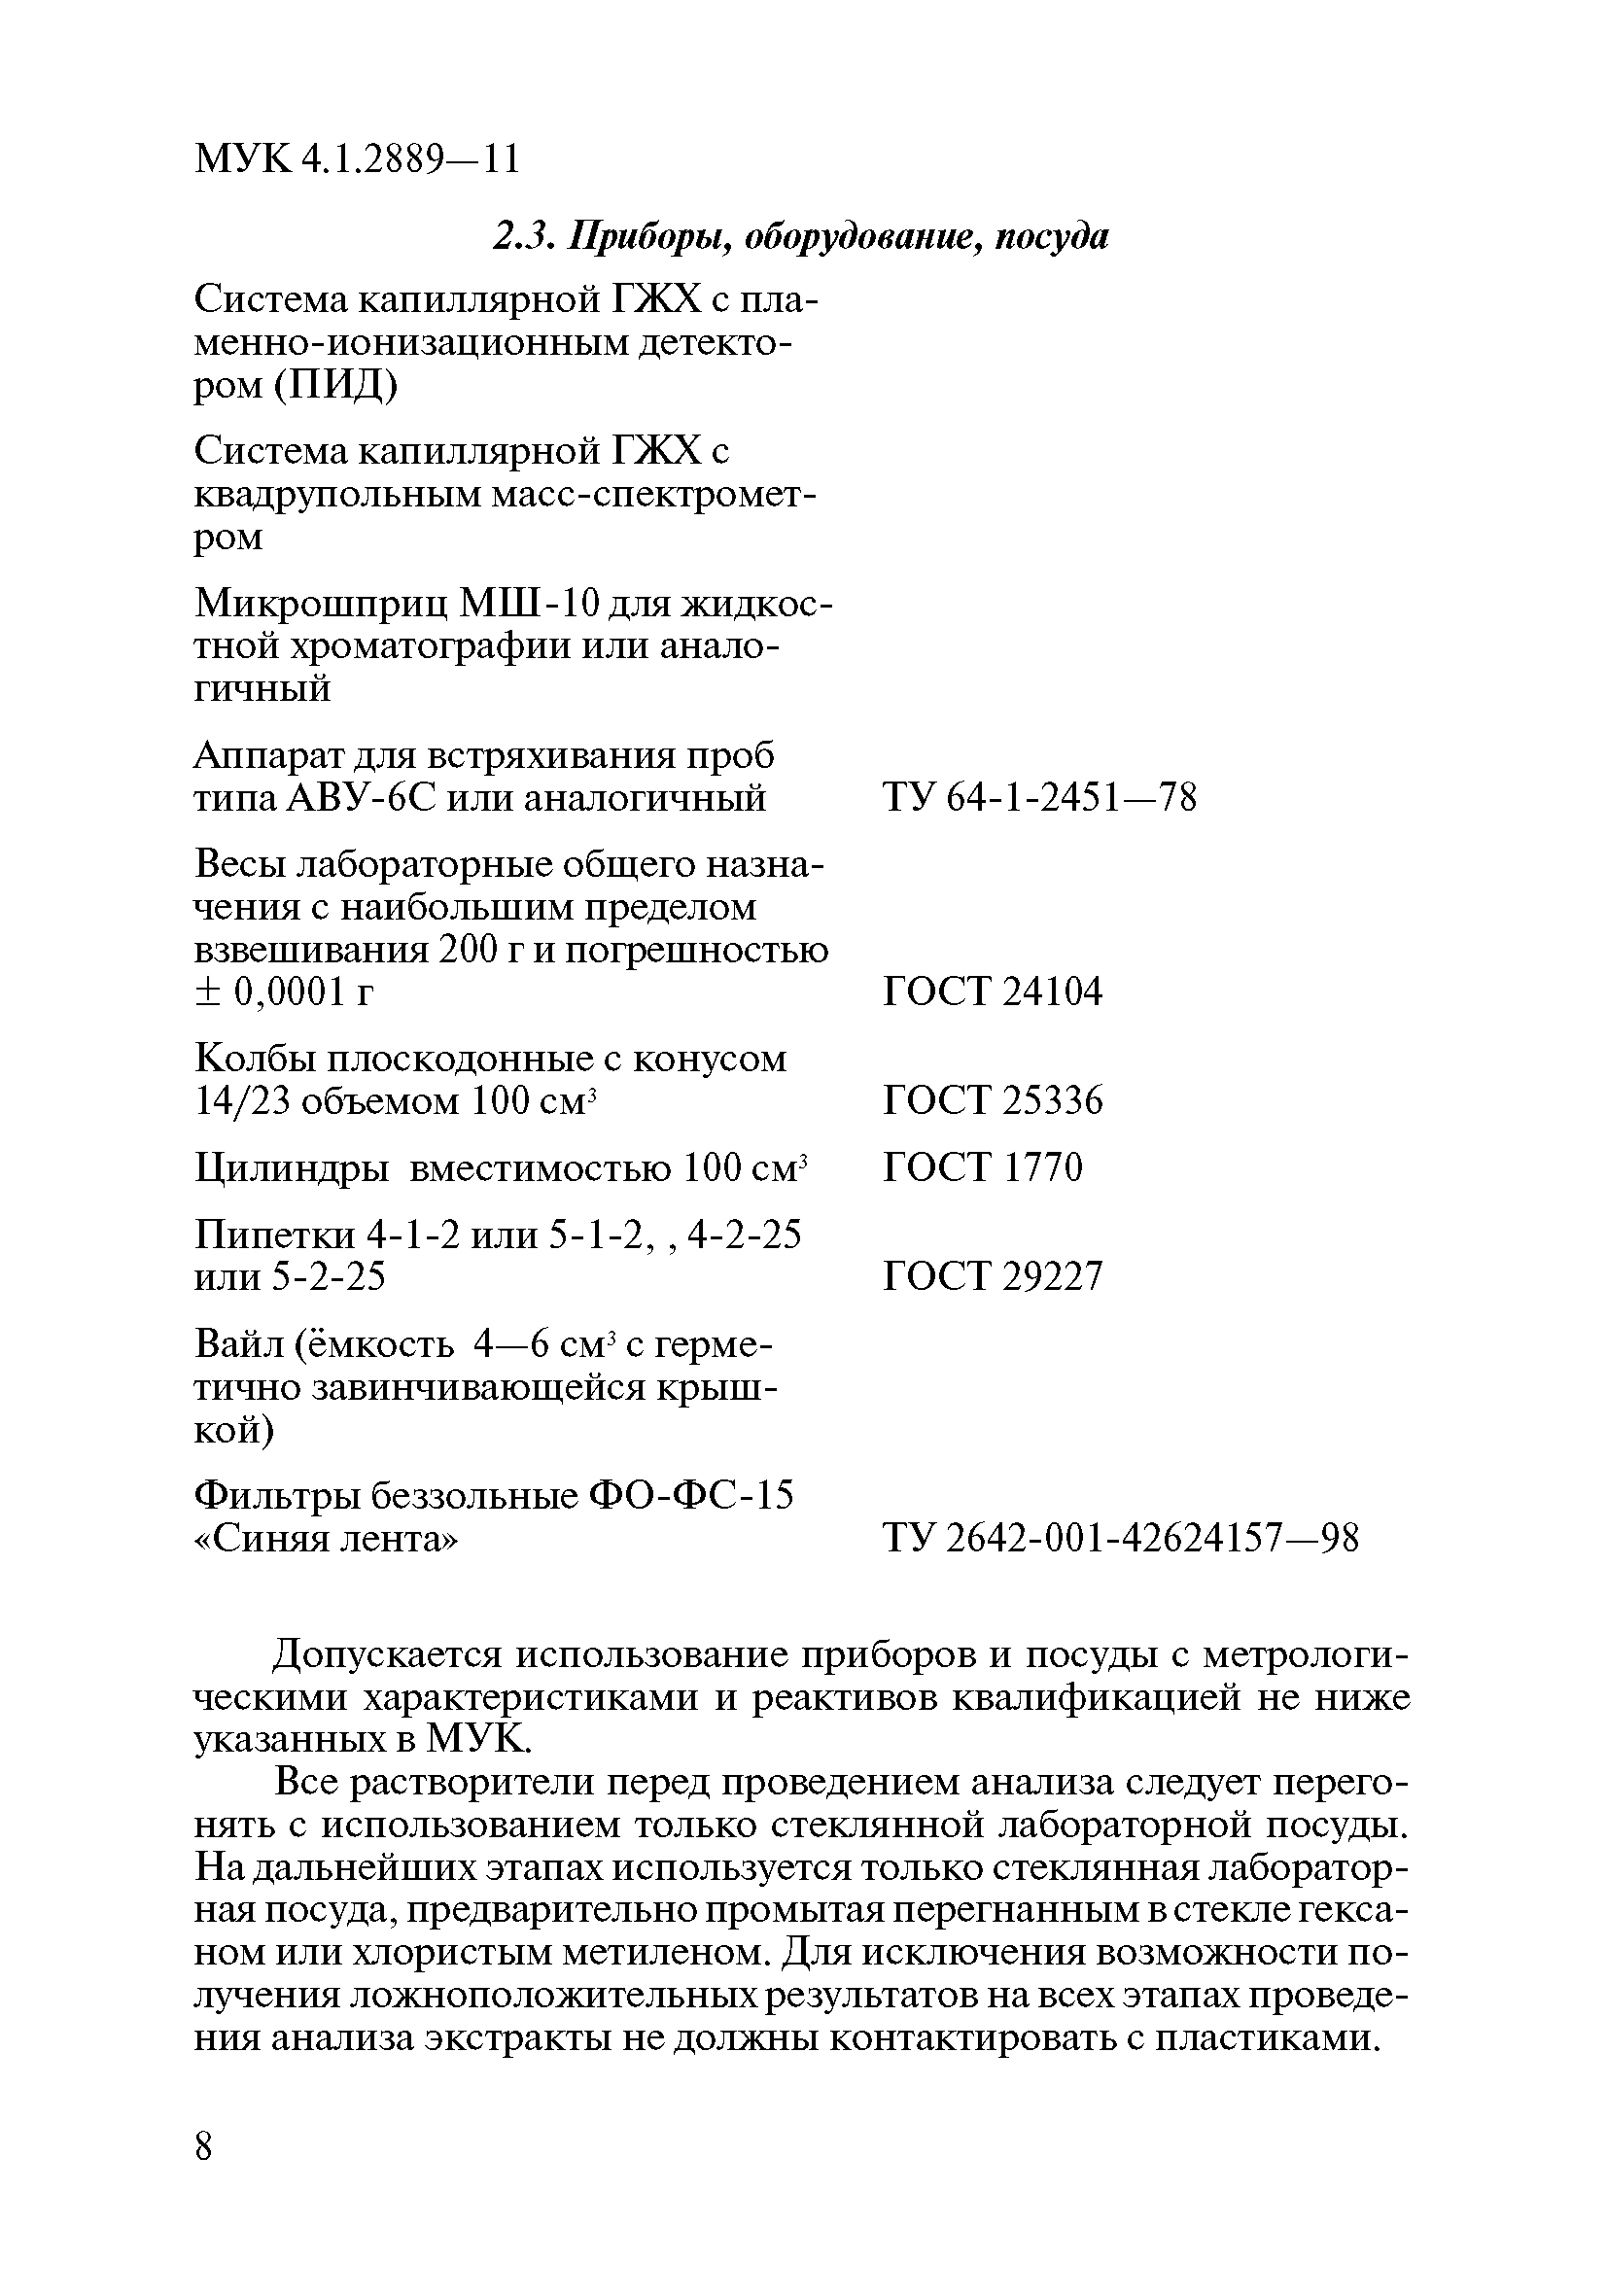 МУК 4.1.2889-11